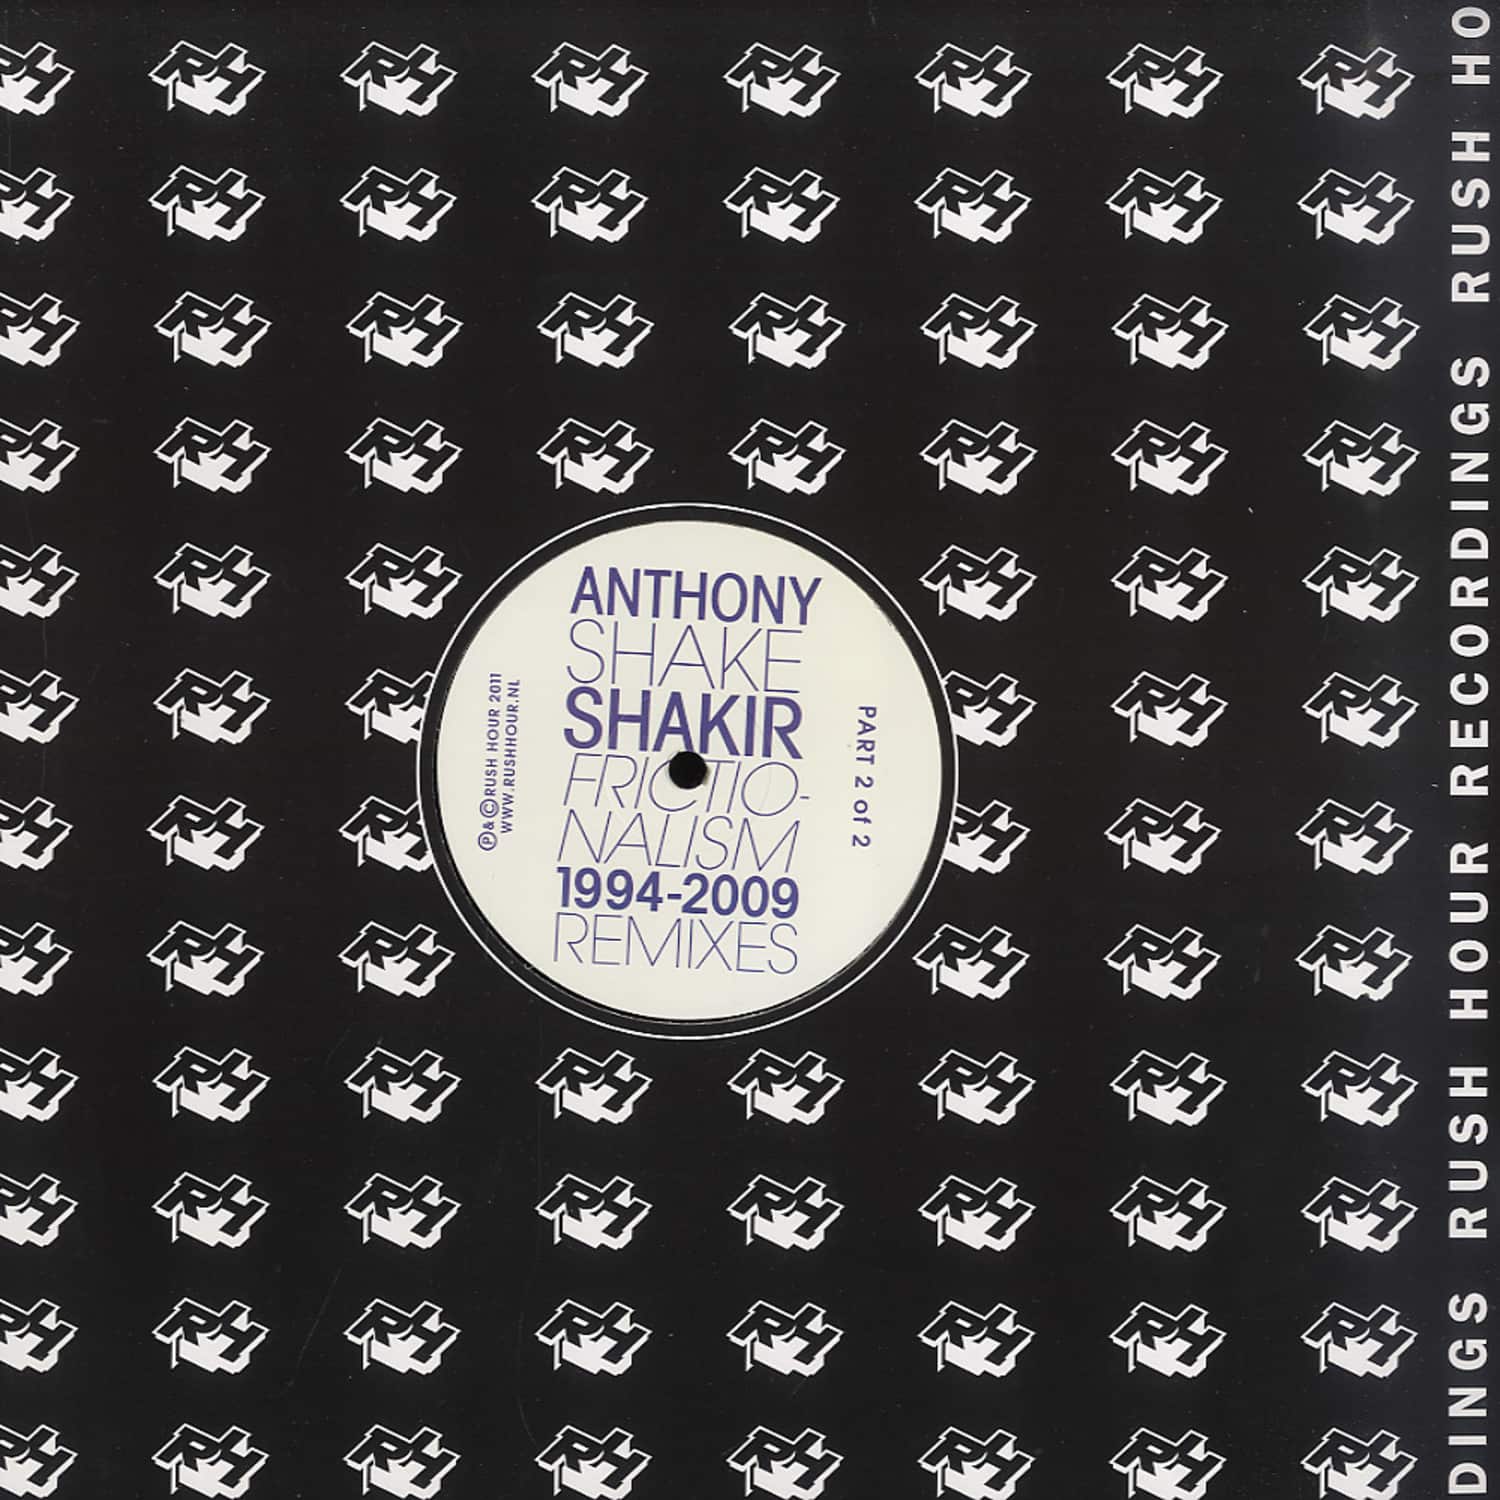 Anthony Shake Shakir - FRICTIONALISM 1994-2009 REMIXES PT 2/2